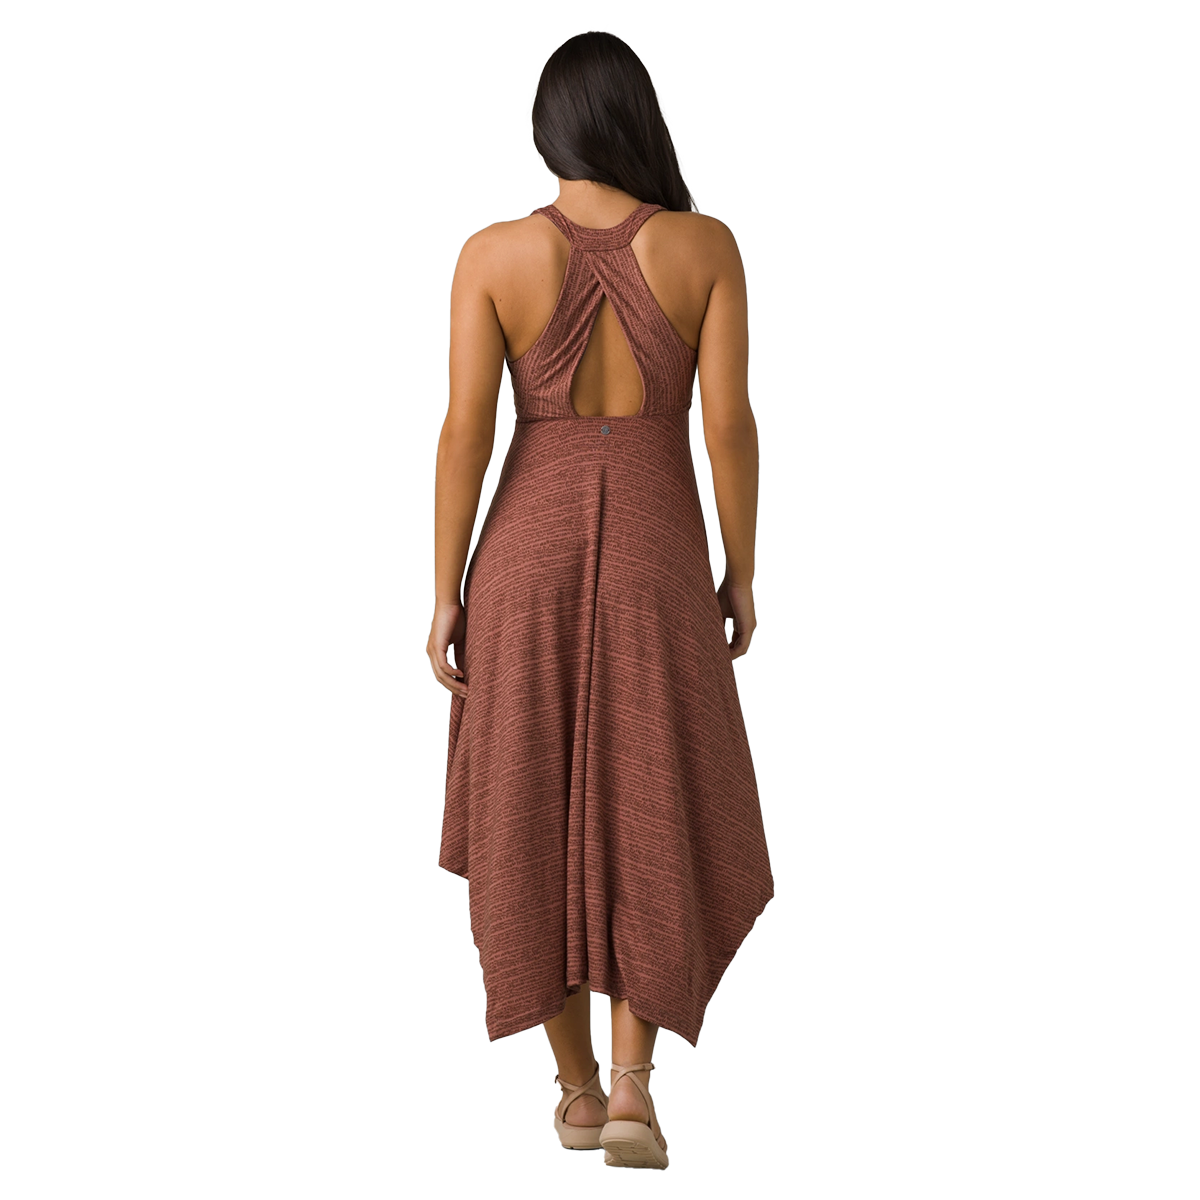 Prana Dress with Built-in Shelf Bra